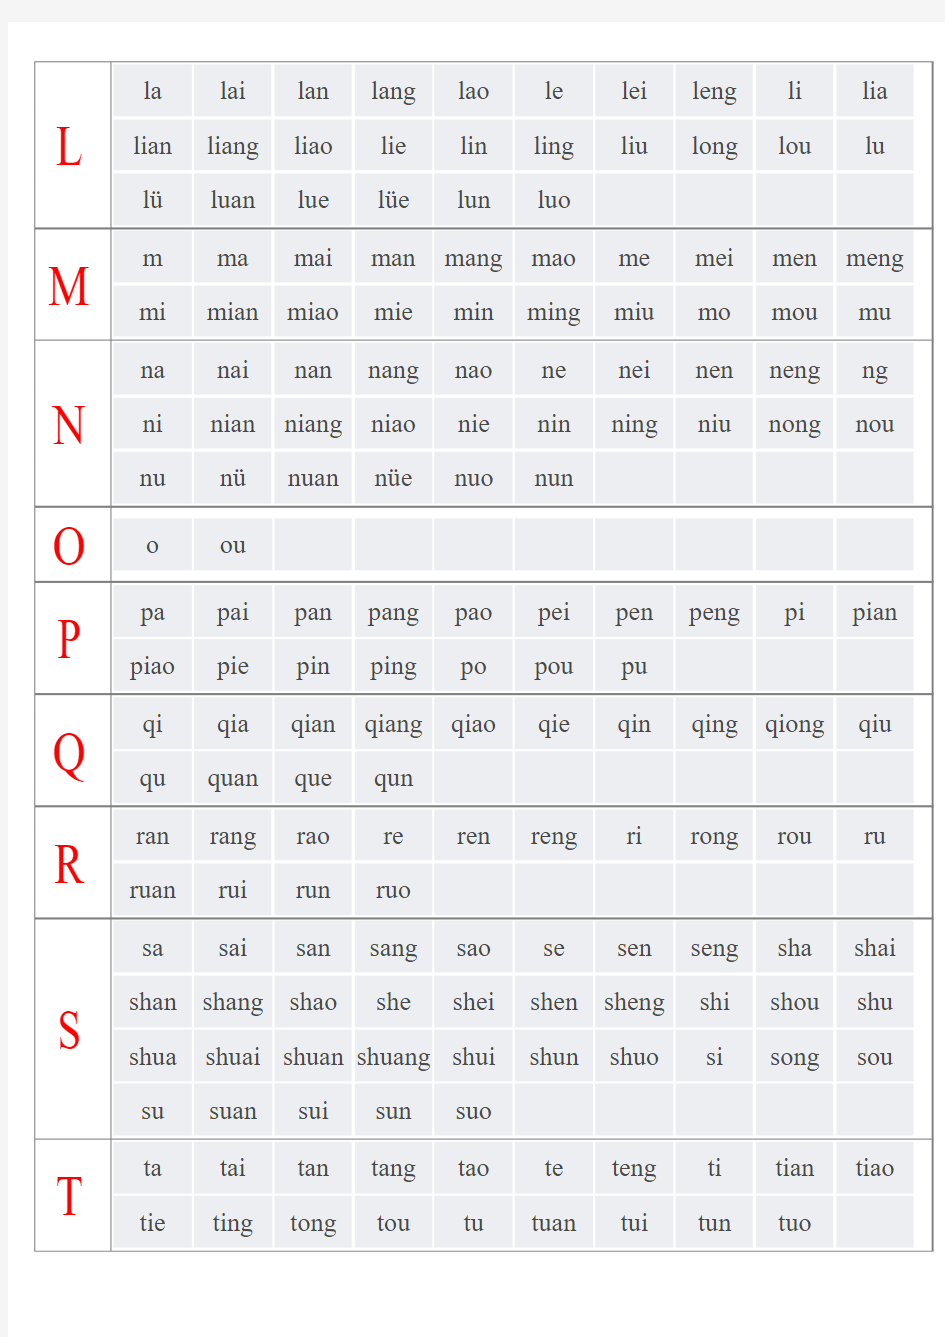 汉语拼音音节索引表-表格无汉字